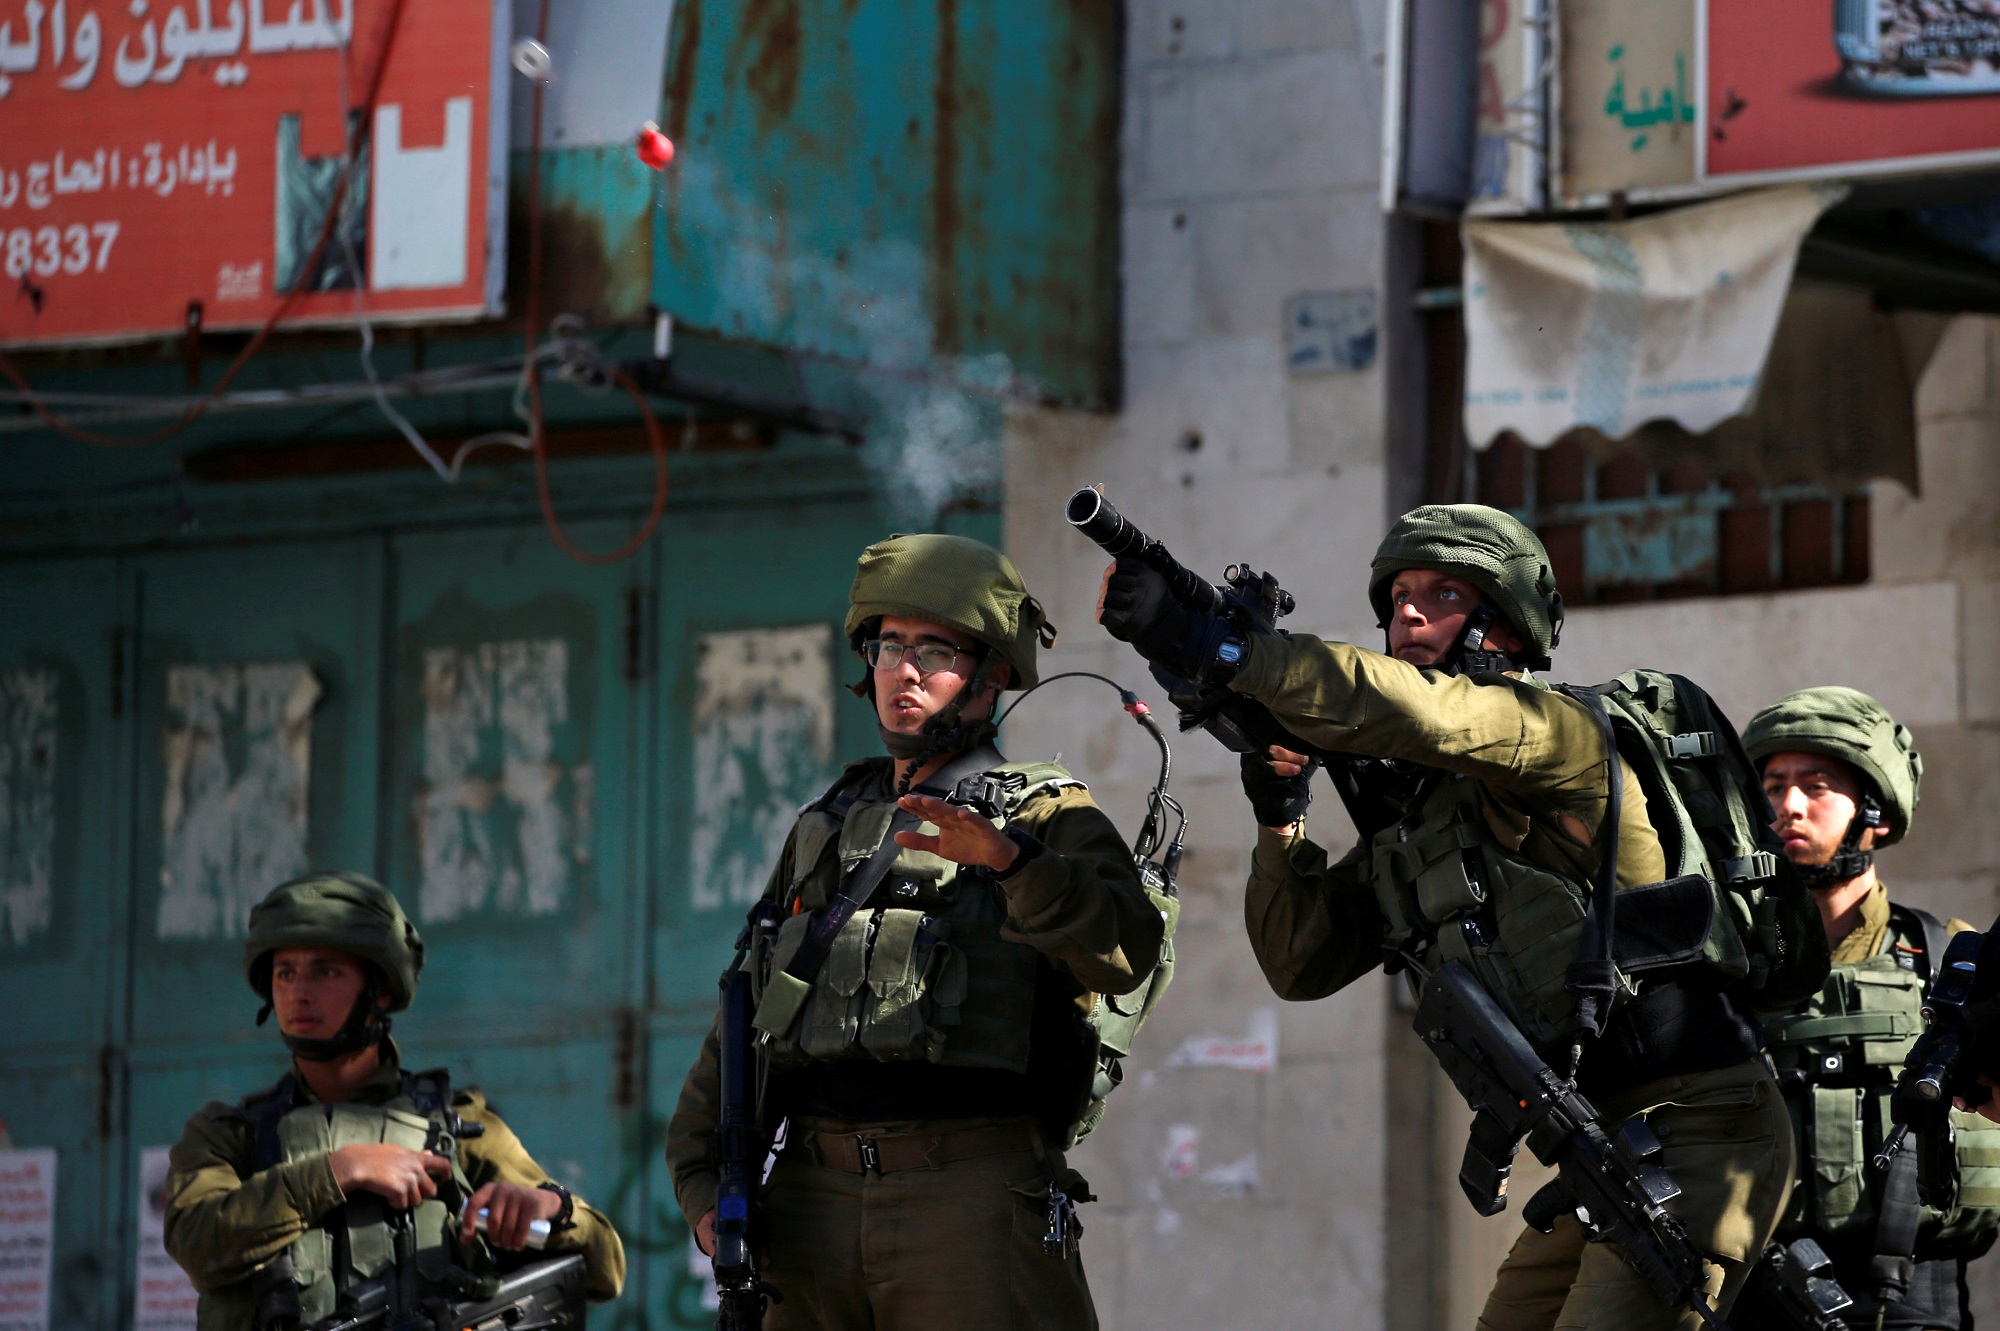 جندي من جيش الاحتلال الإسرائيلي يطلق قنابل غاز باتجاه فلسطينيين في الخليل، 12 أبريل 2019. رويترز